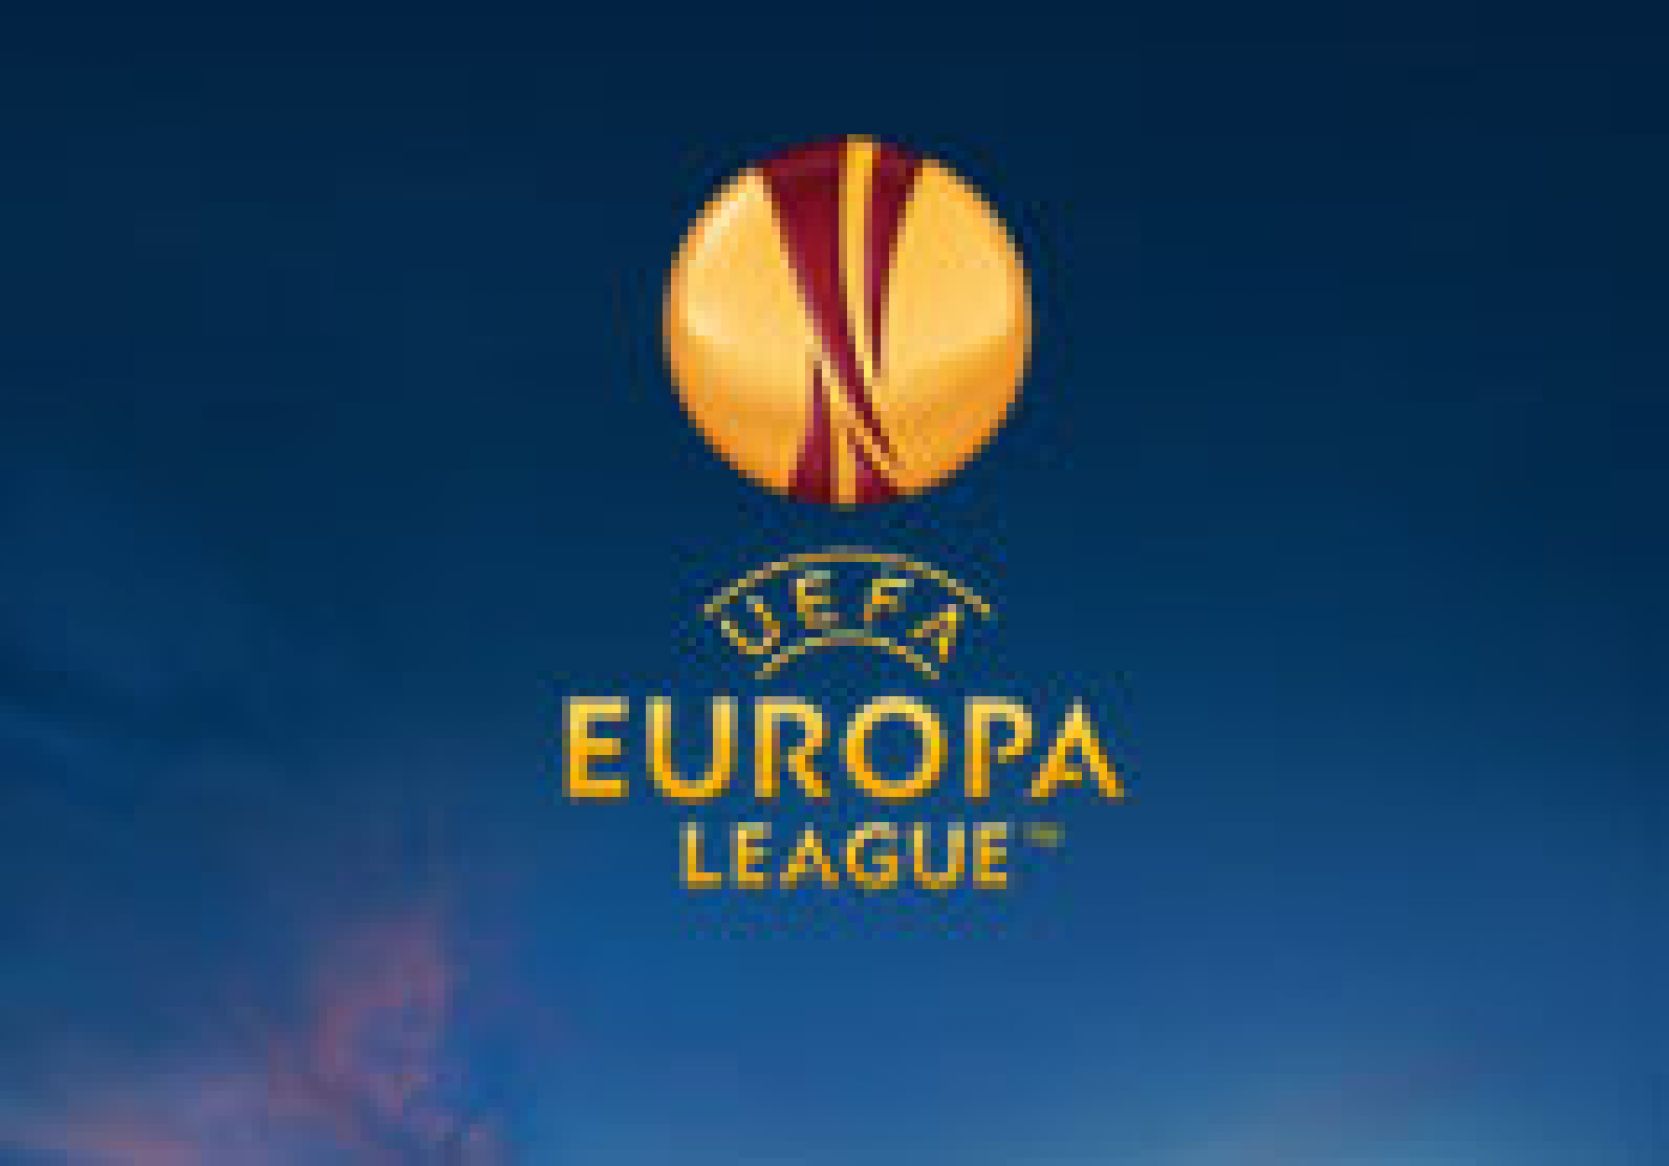 Billetinformation: UEFA Europa League